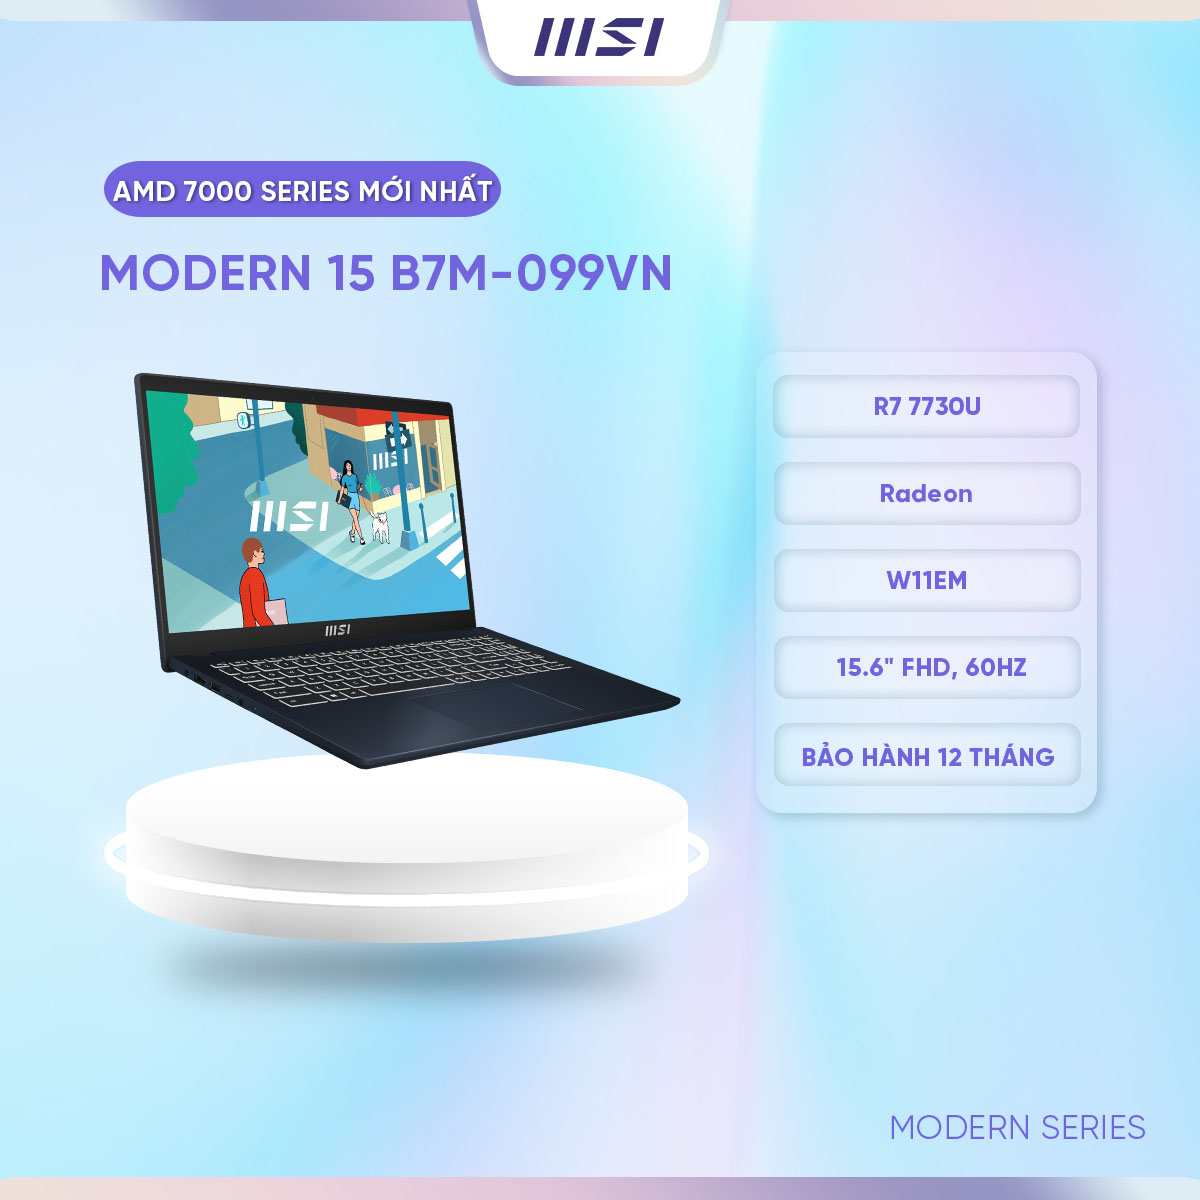 MSI Laptop Văn phòng Modern 15 B7M-099VN|R5 7530U|Radeon|DDR4 8GB|512GB SSD|15.6&quot; FHD, 60Hz [Hàng chính hãng]